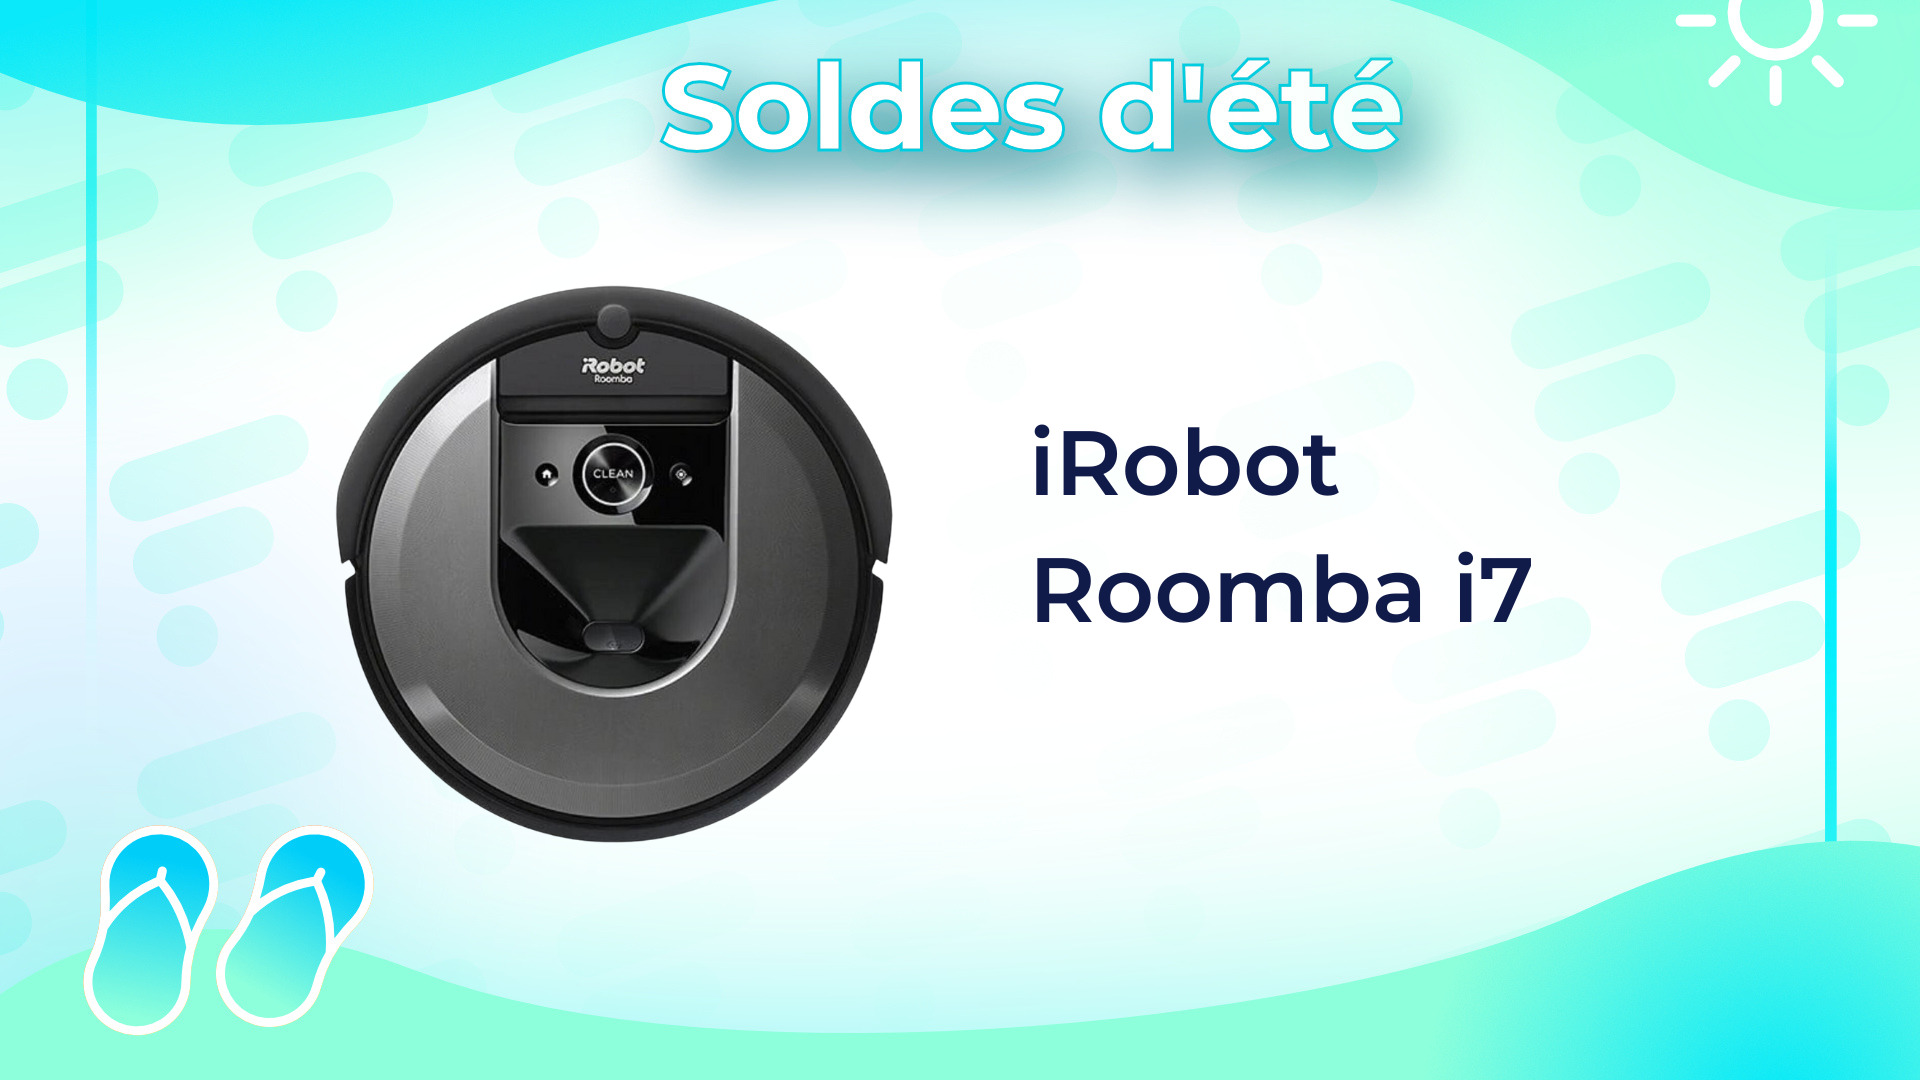 Aspirateur robot Irobot - Achat en ligne - Darty